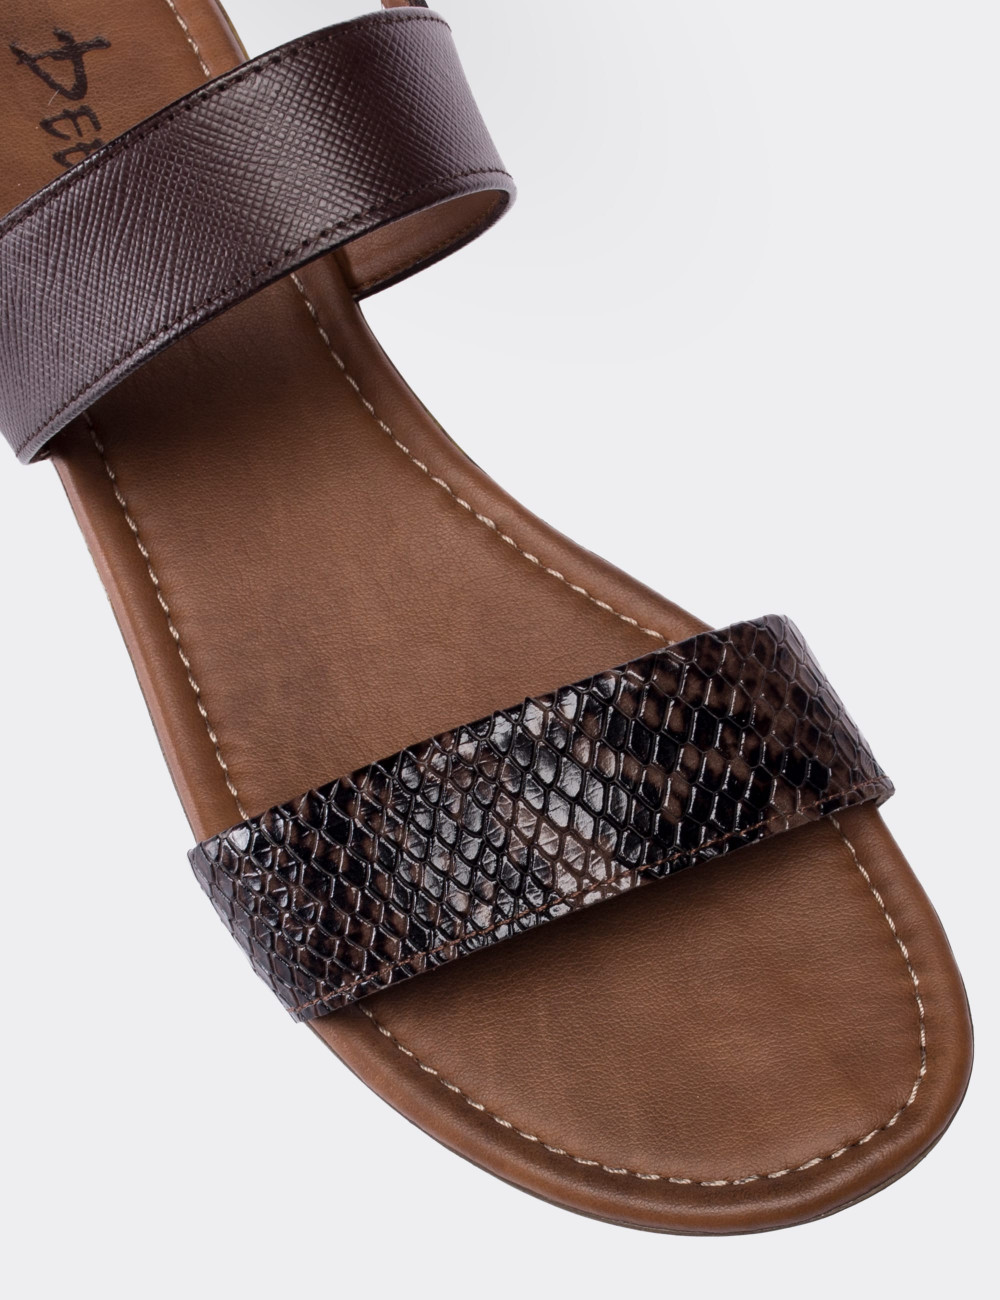 Hakiki Deri Kroko Kahverengi Kadın Sandalet - 02120ZKHVC01